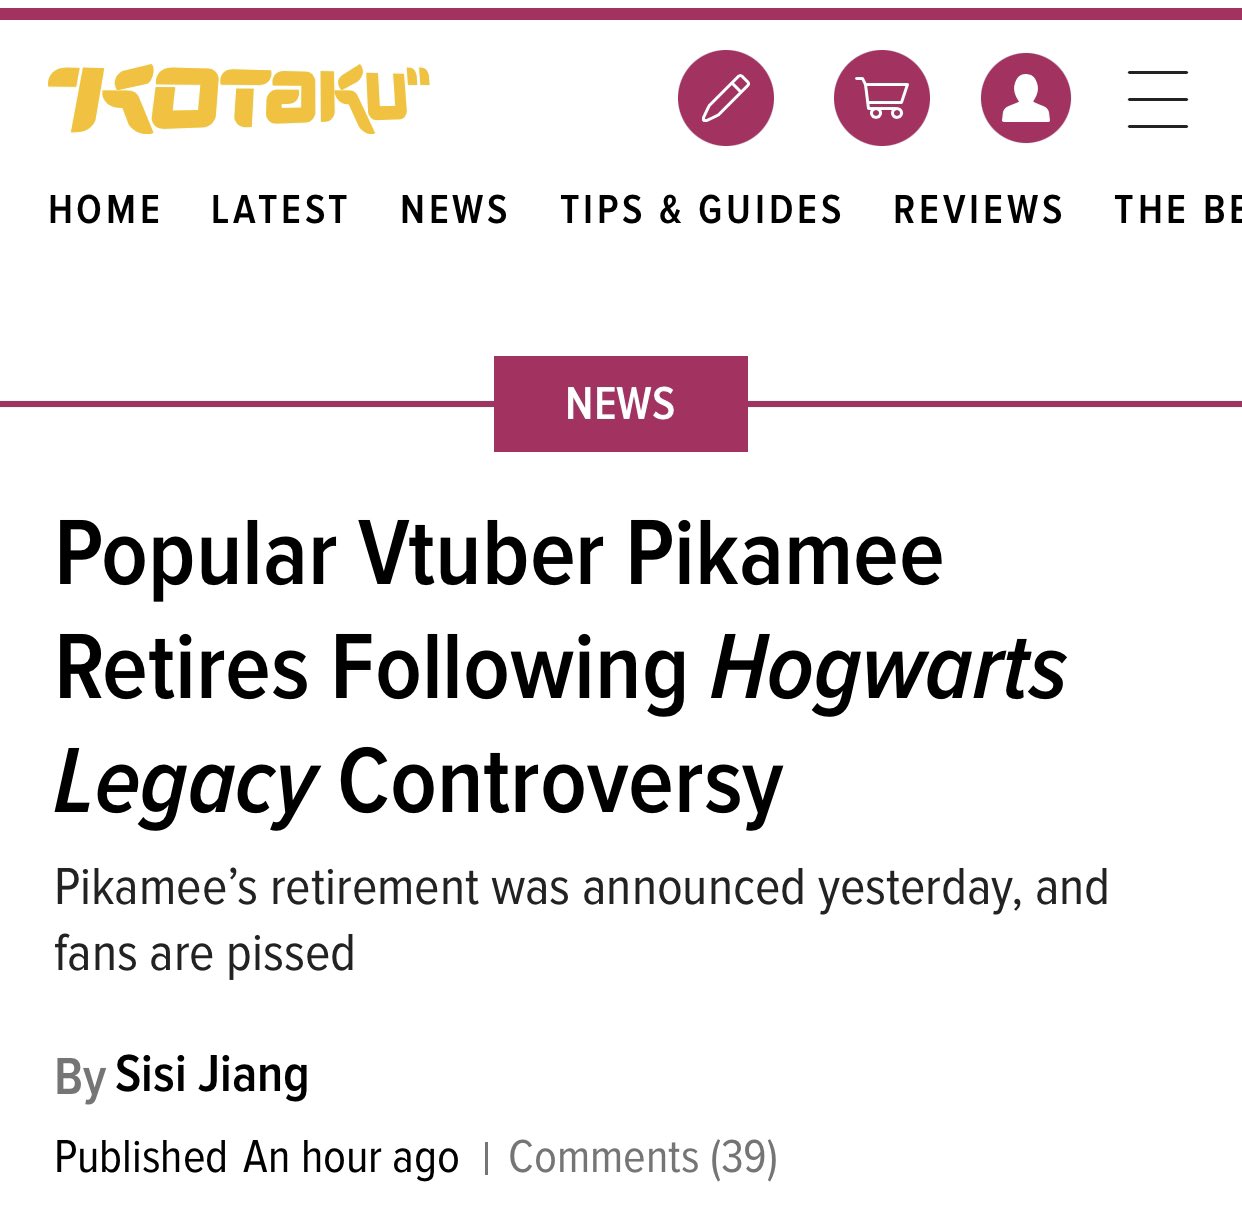 Popular Vtuber Pikamee Retires Post Hogwarts Legacy Controversy